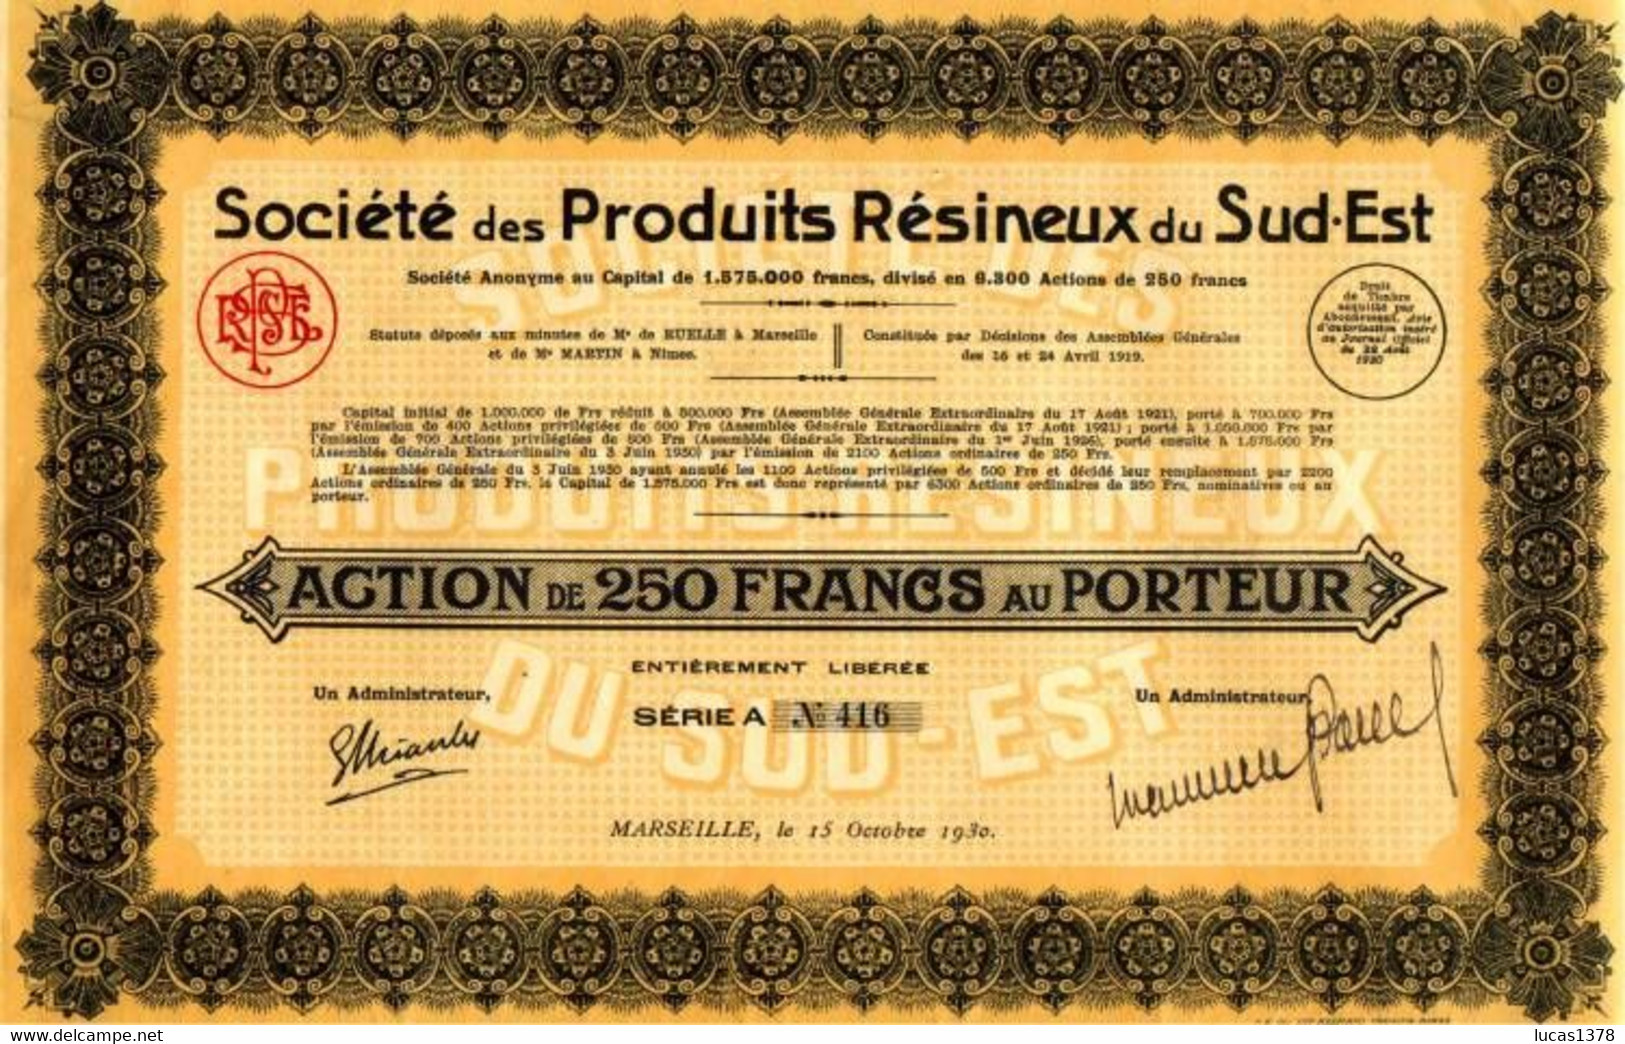 MARSEILLE / 1930 / SOCIETE DES PRODUITS RESINEUX DU SUD EST / RARE - Agriculture